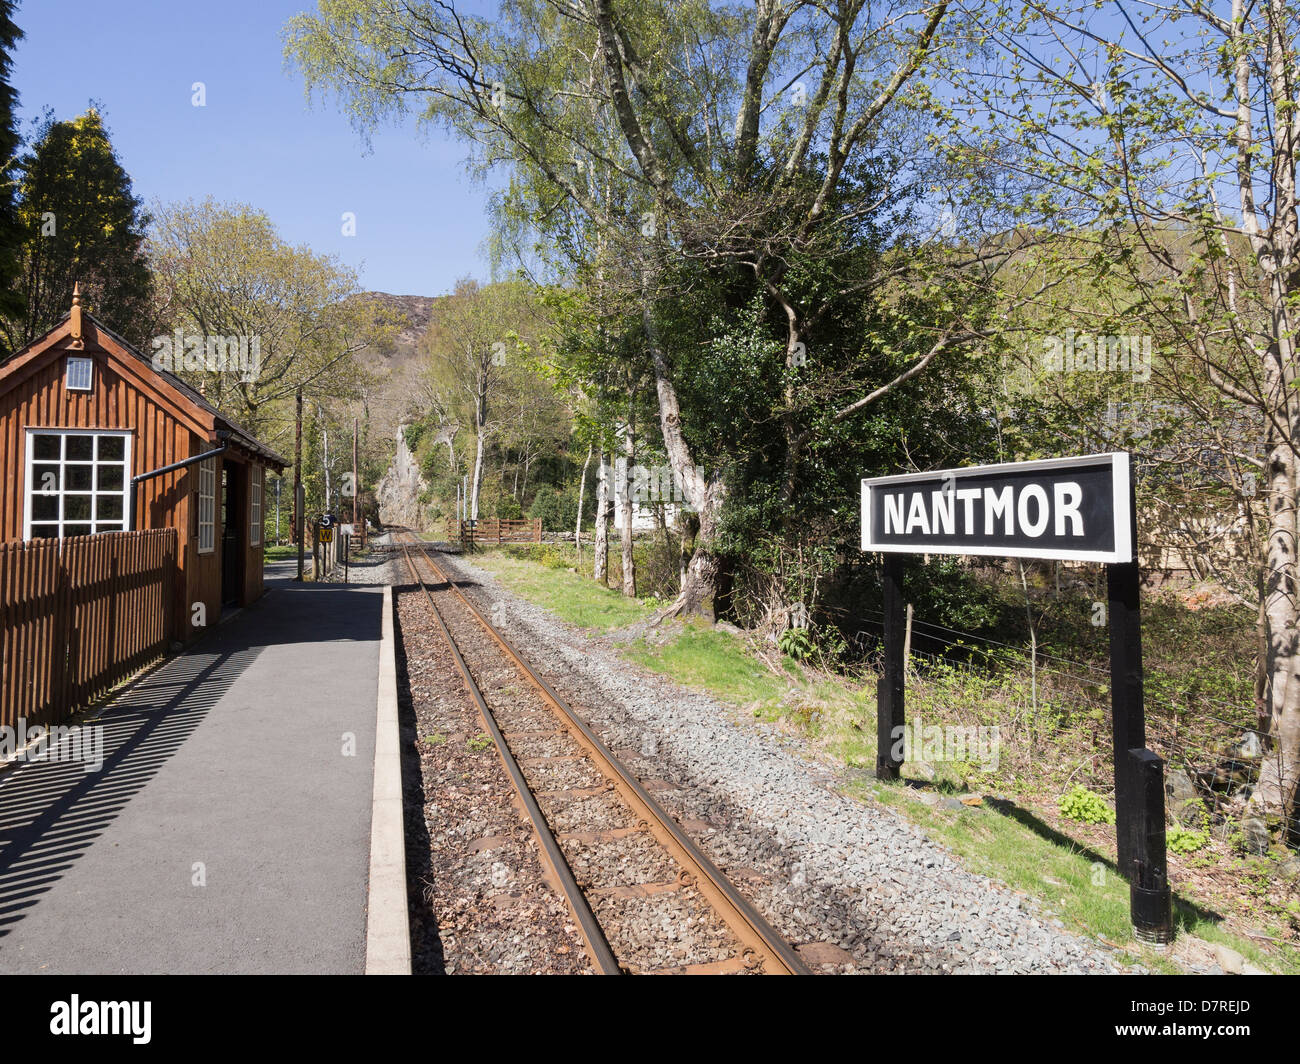 Welsh Highland Railway station de train à voie étroite de Snowdonia. Nantmor, Gwynedd, au nord du Pays de Galles, Royaume-Uni, Angleterre Banque D'Images